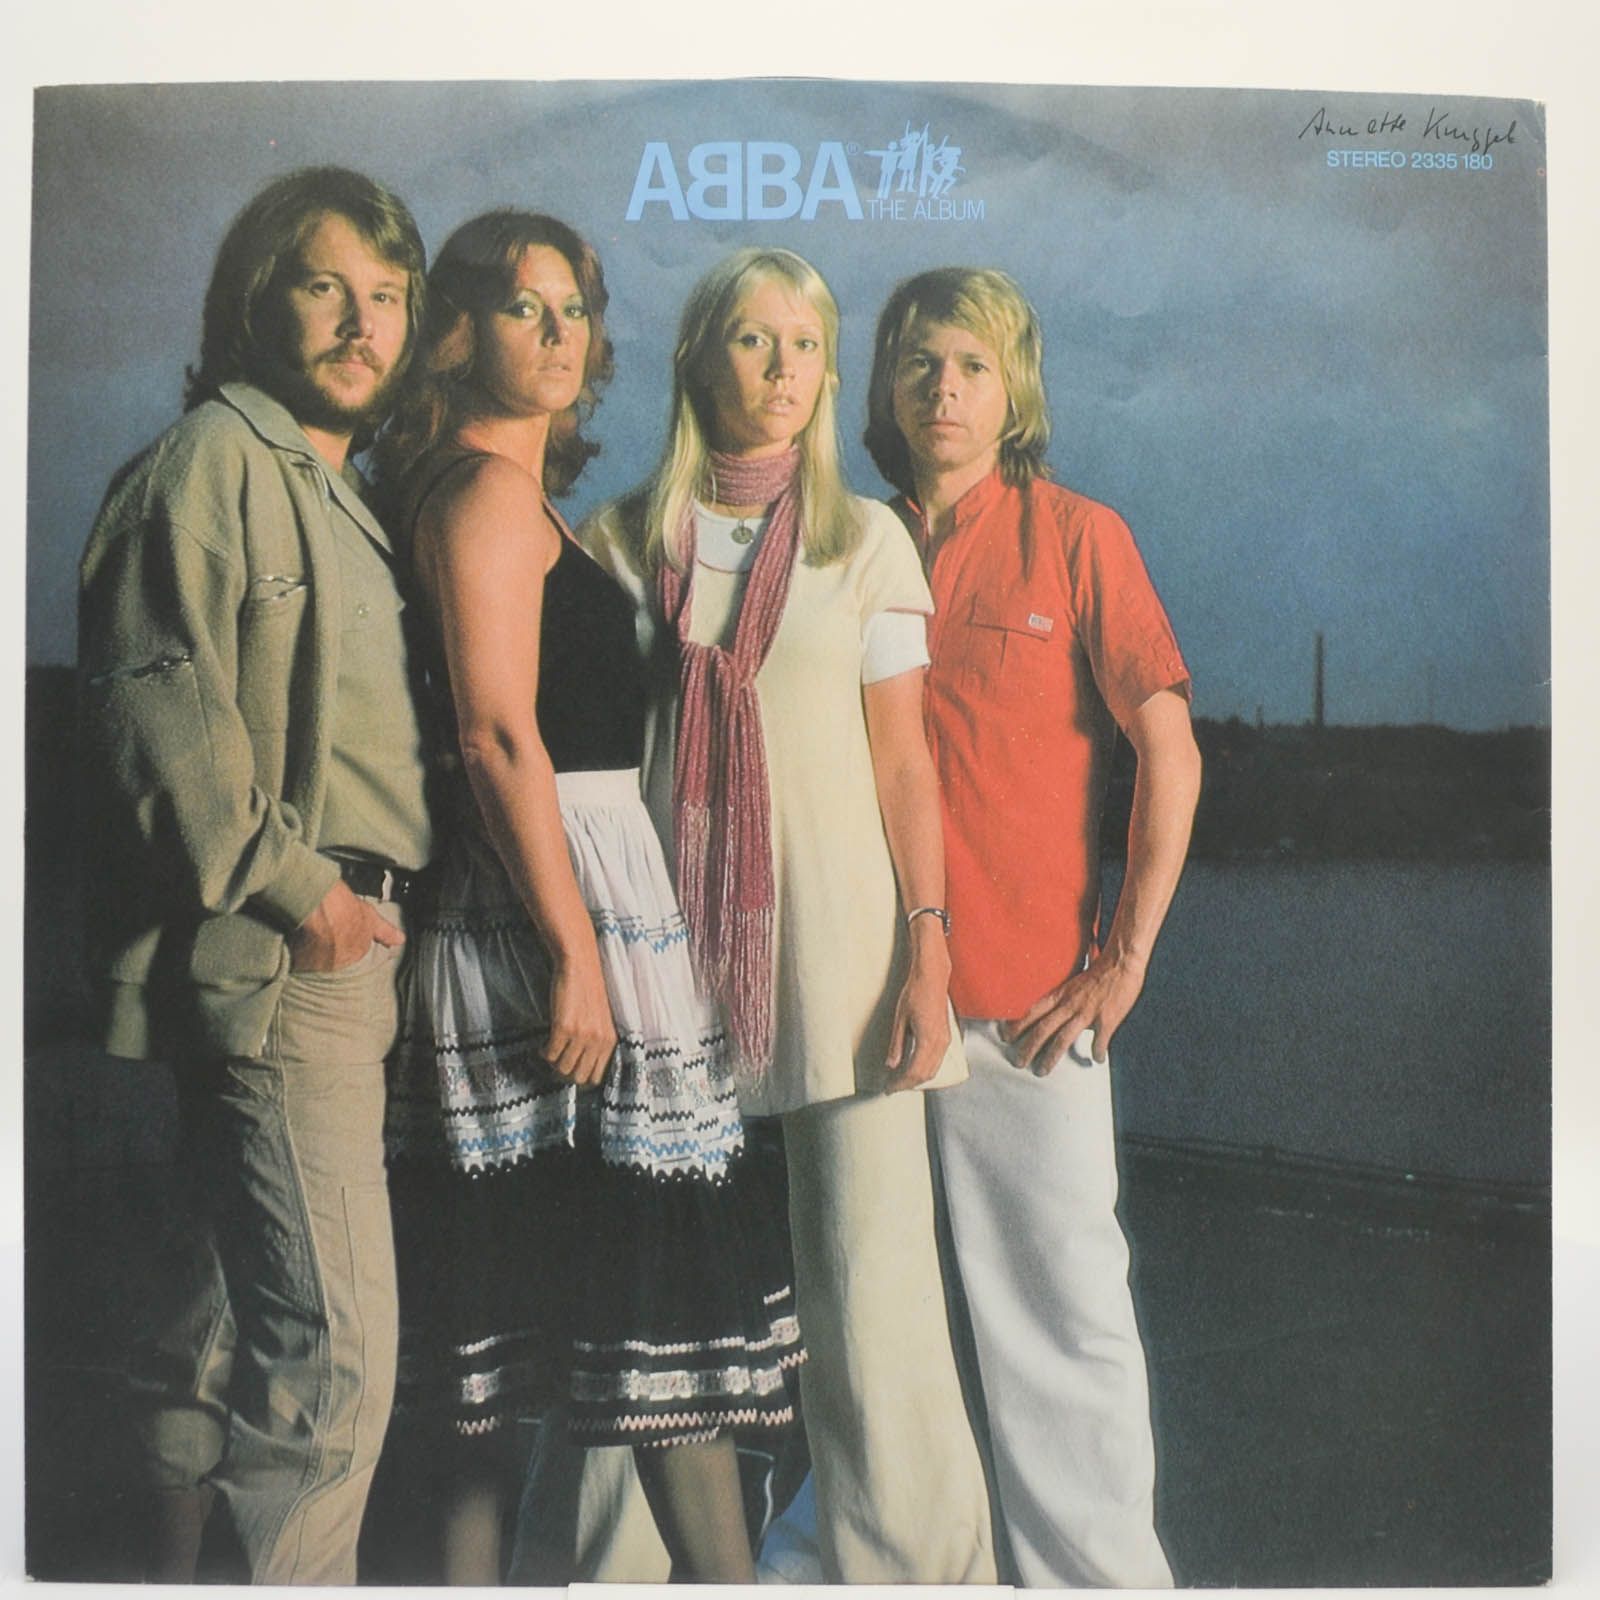 ABBA — The Album, 1978